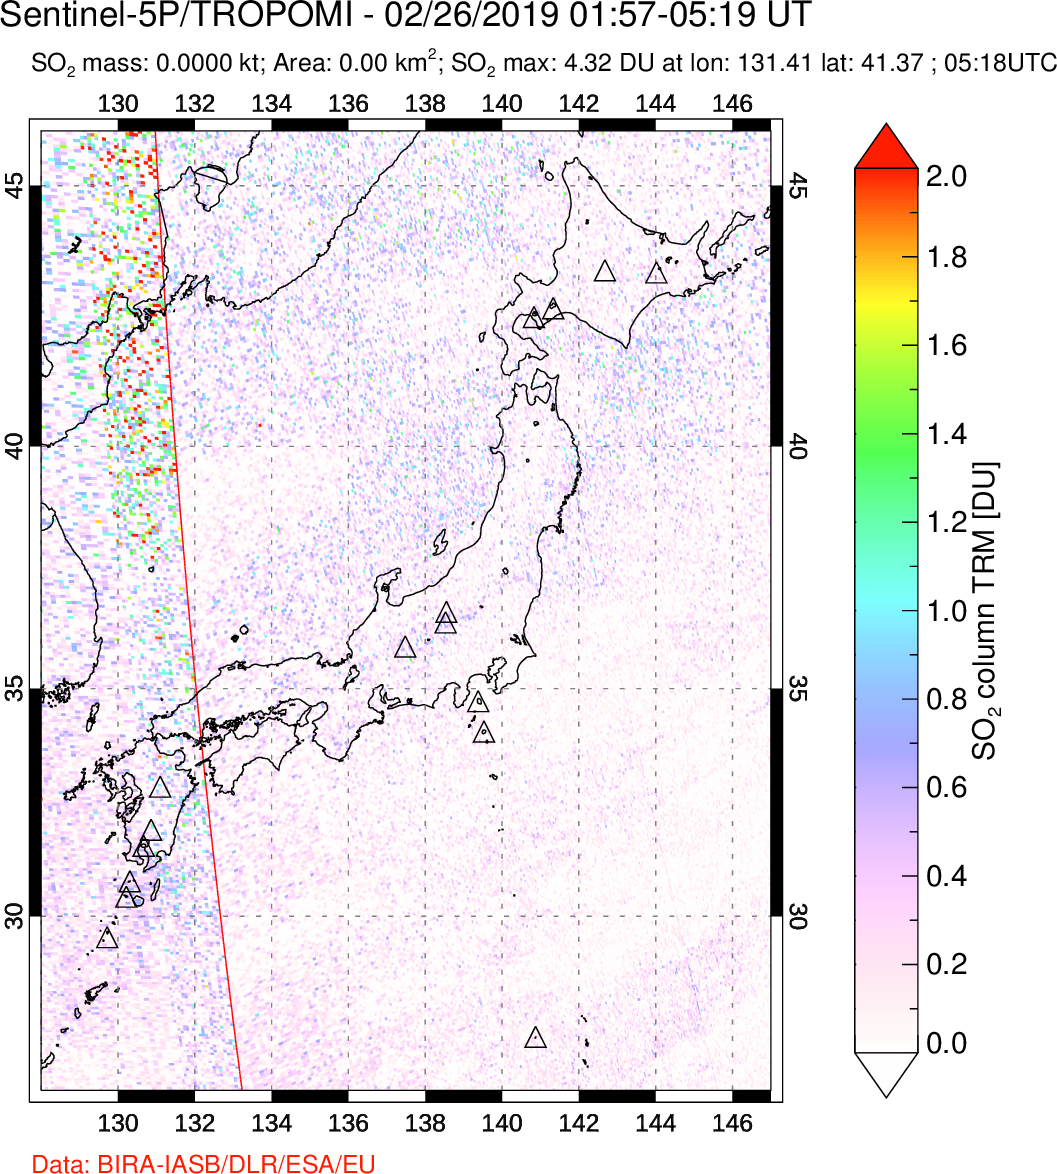 A sulfur dioxide image over Japan on Feb 26, 2019.